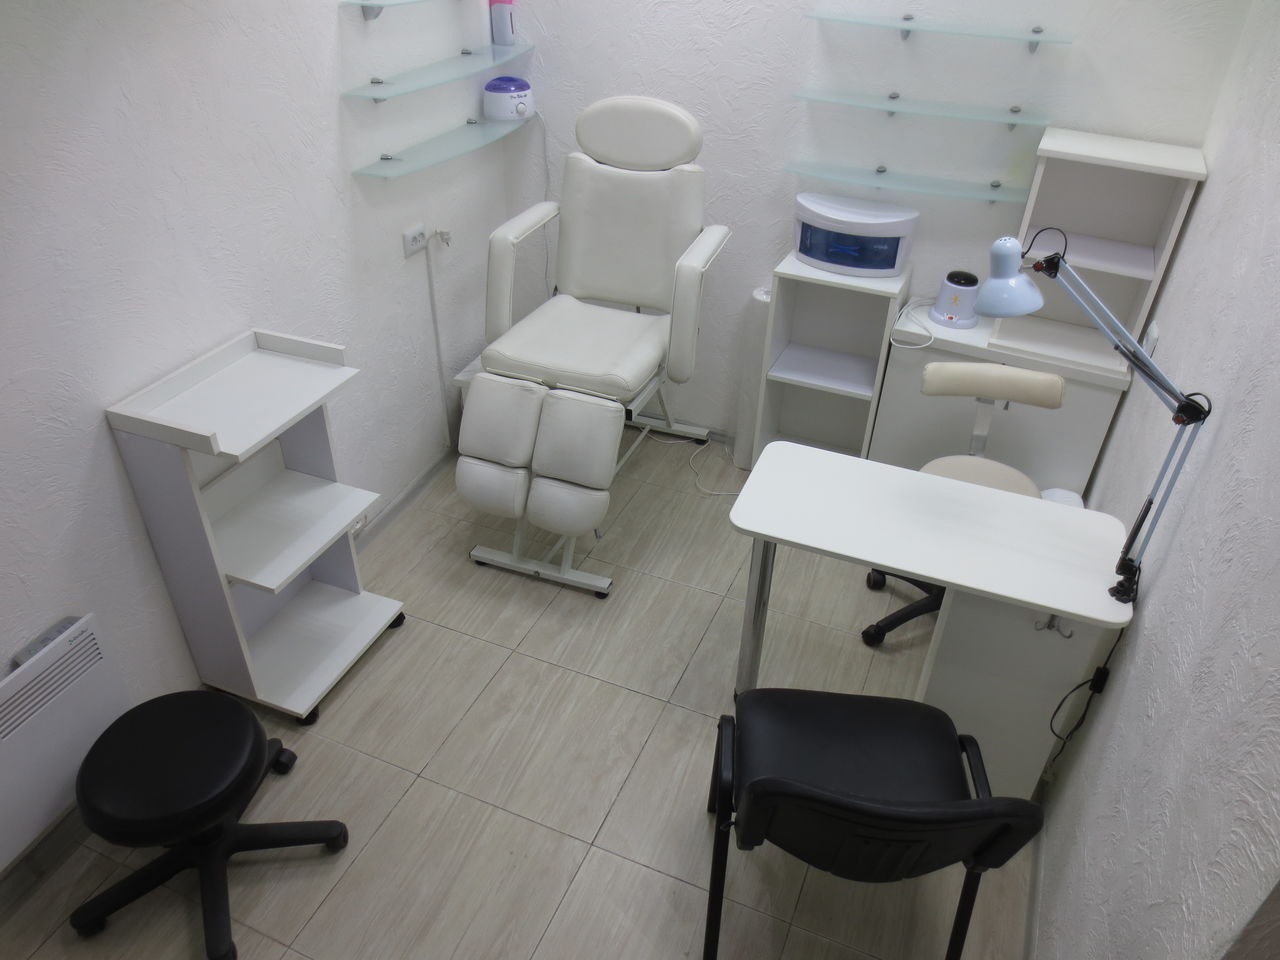 мебель для педикюрного кабинета